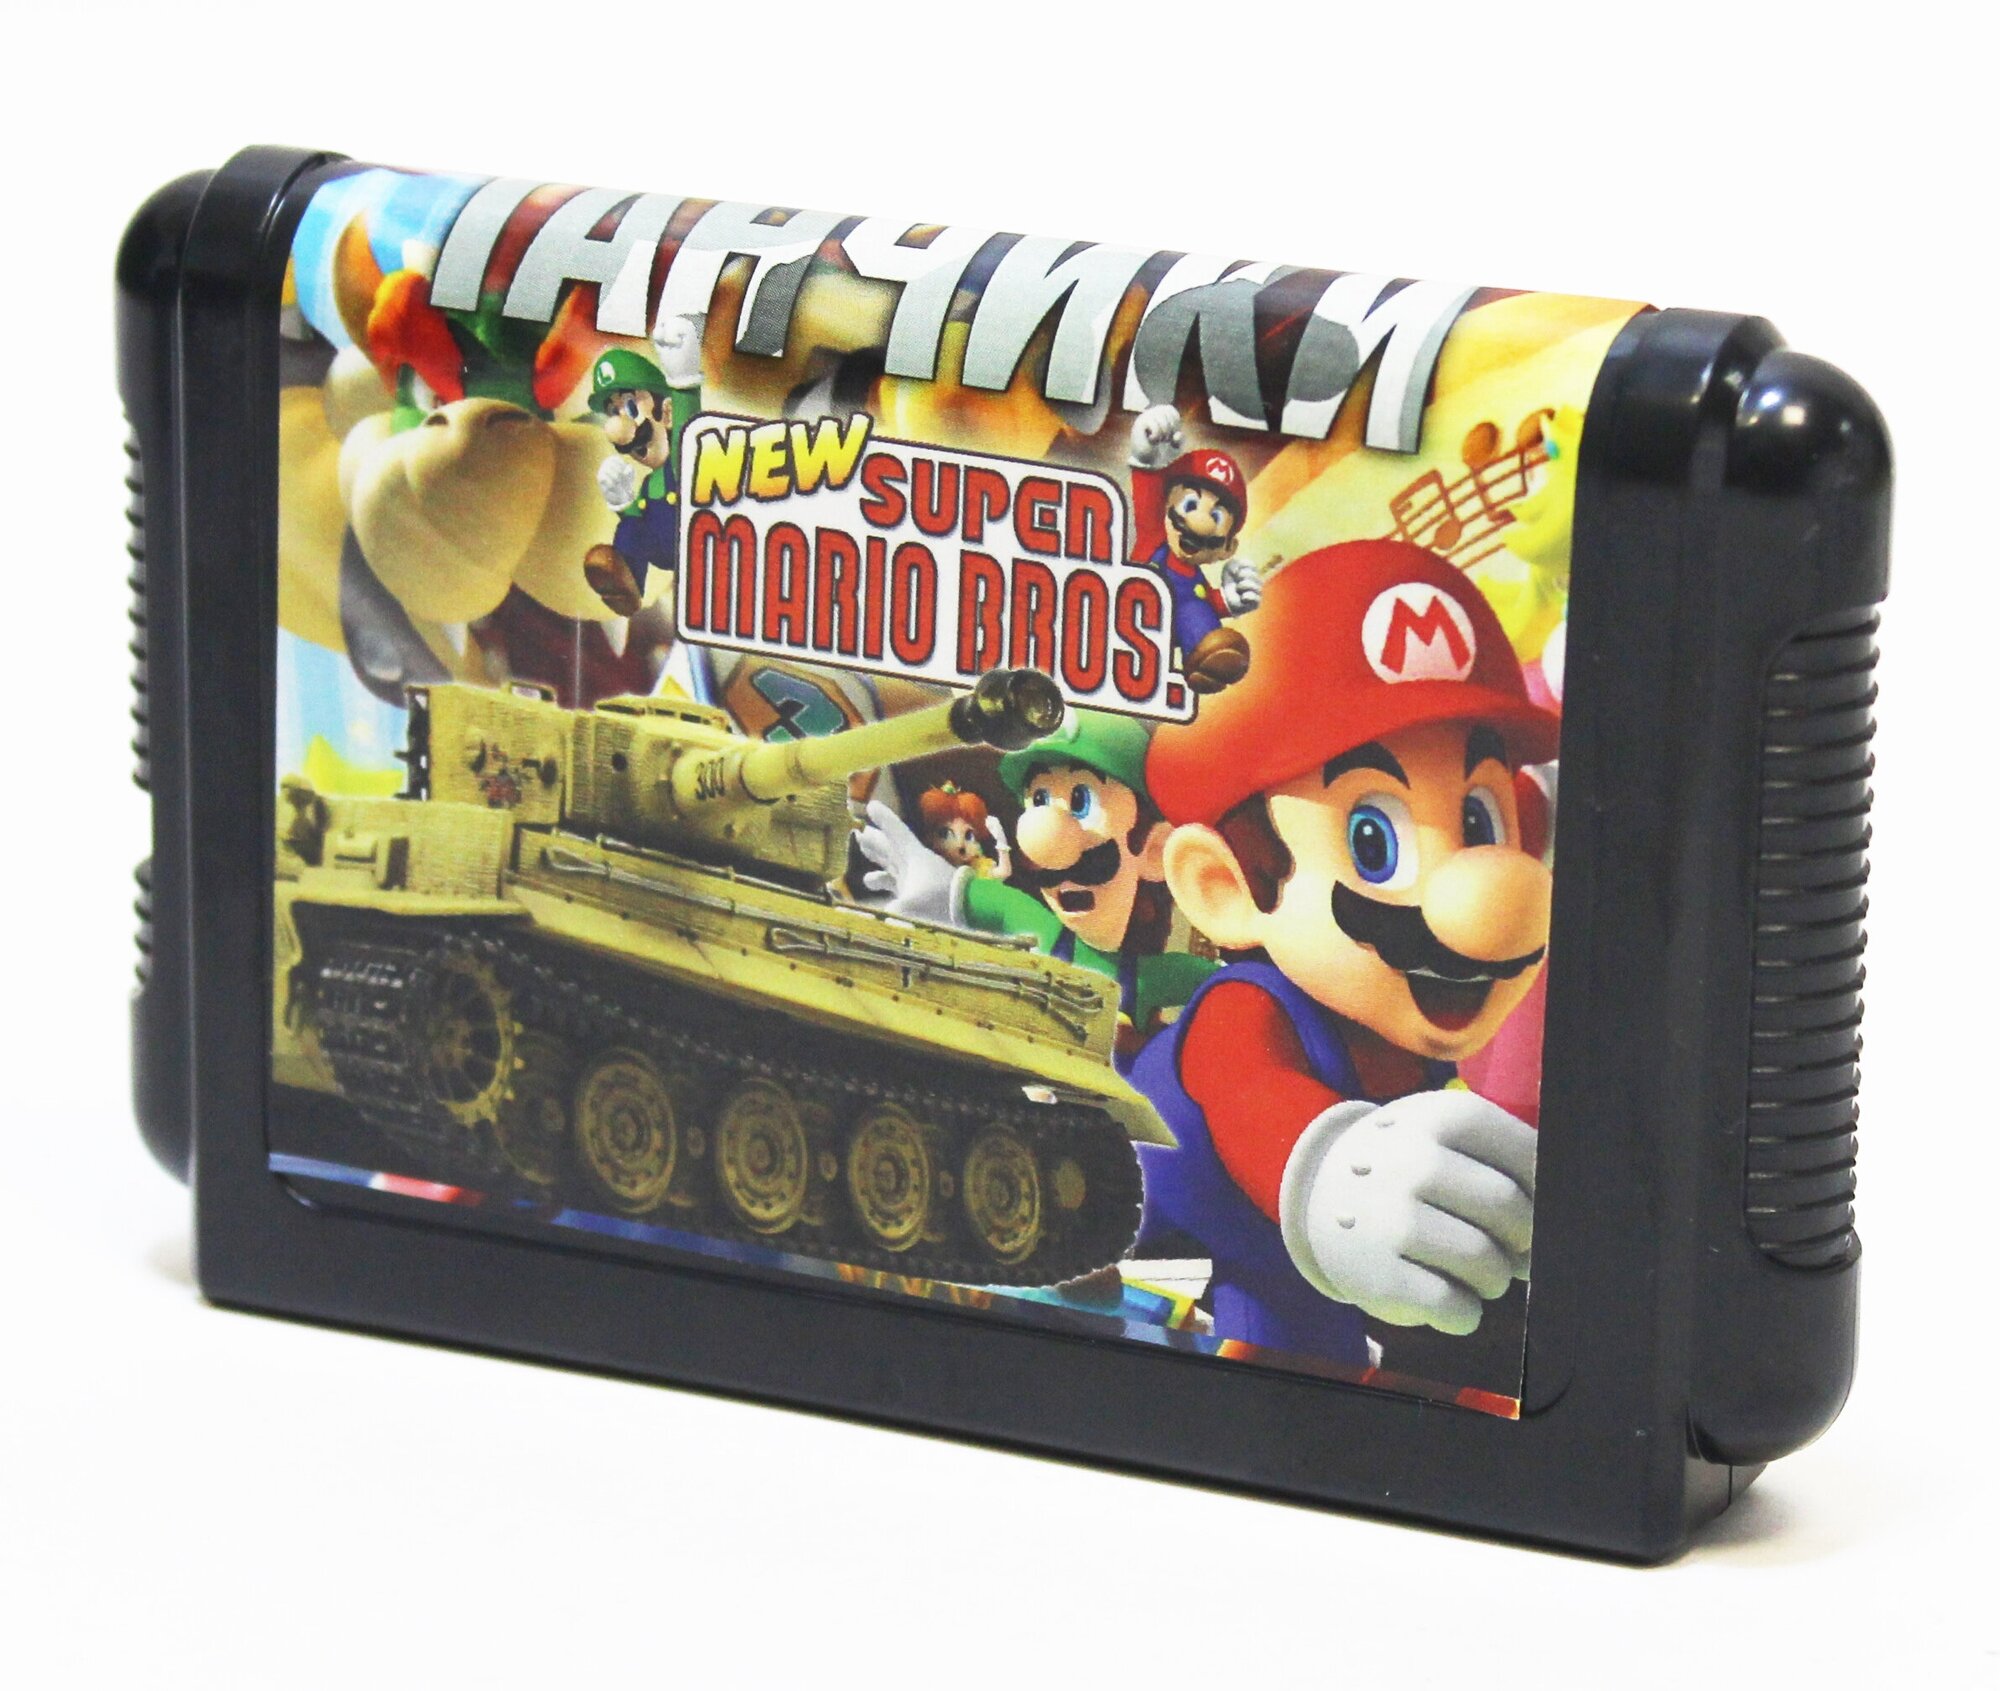 Super Mario + Танчики (16-bit) - шикарный сборник из двух хитов для приставок типа Sega - (без коробки)